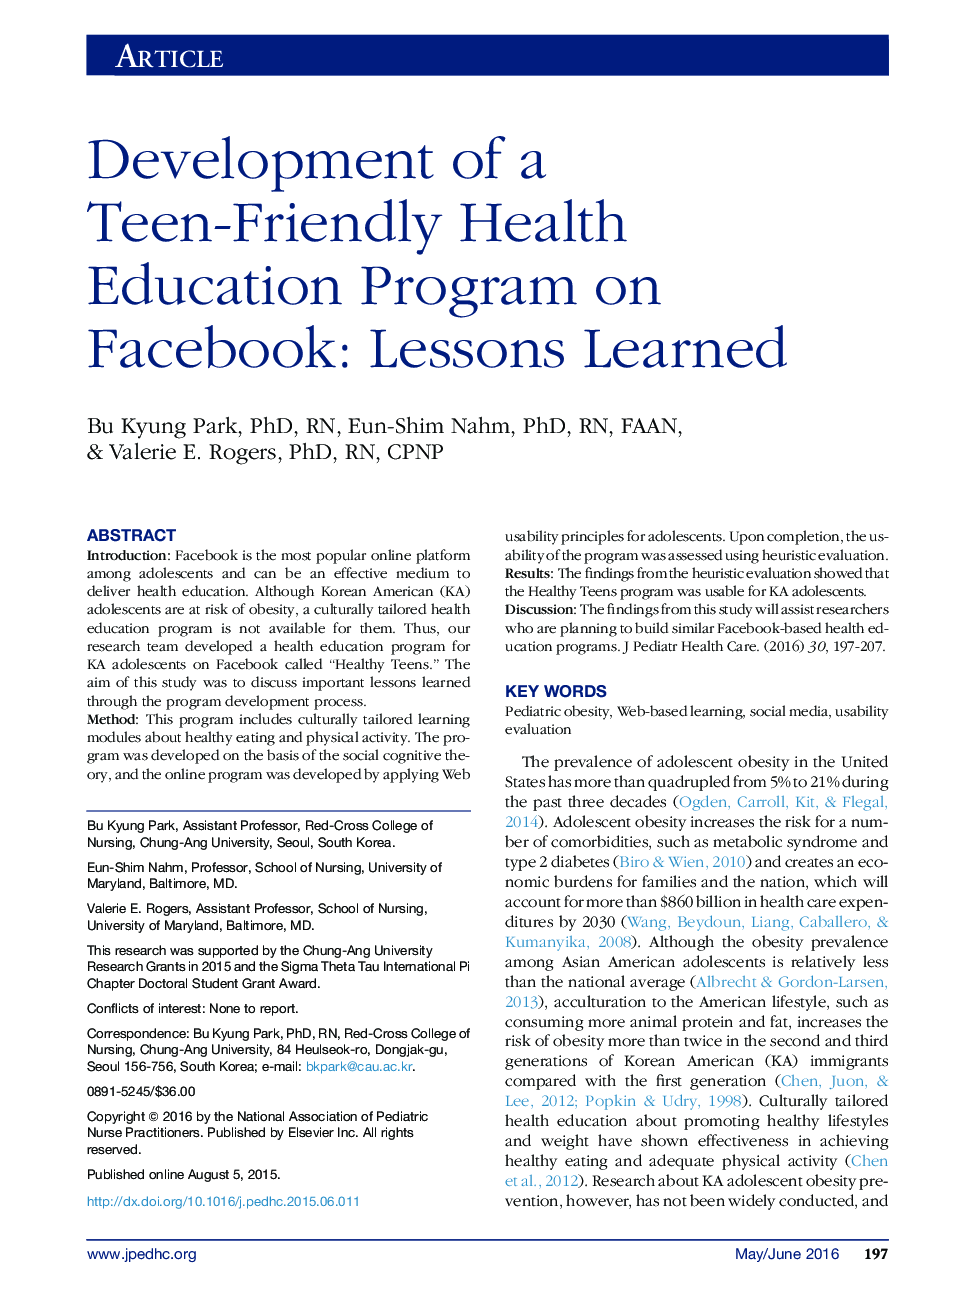 توسعه یک برنامه آموزش بهداشت سالم در فیس بوک: درس های آموخته شده